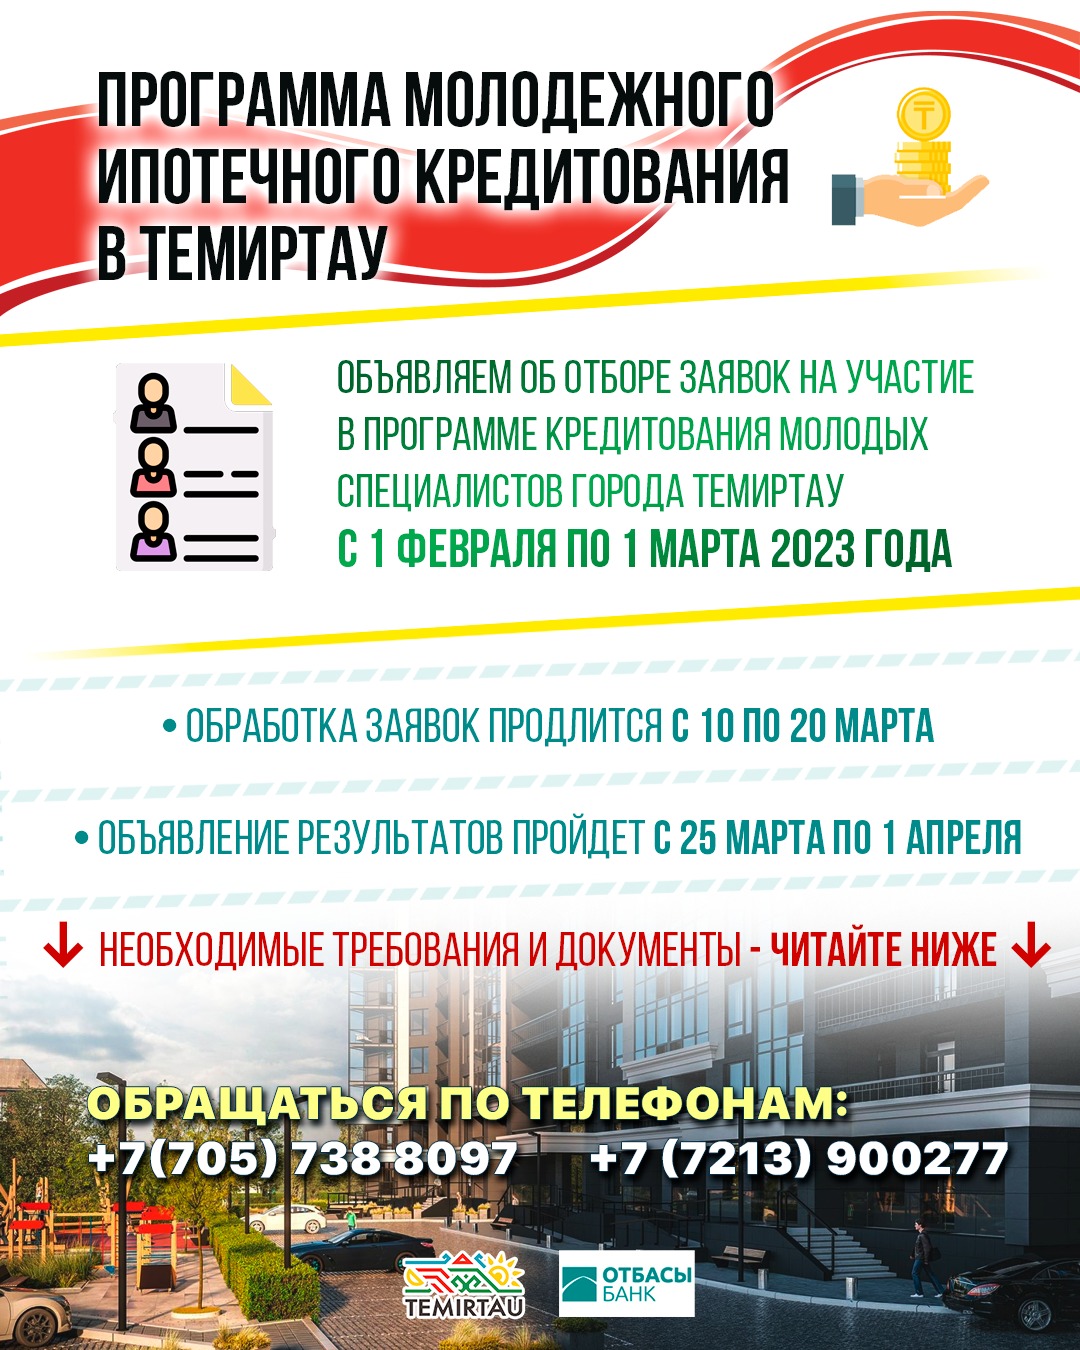 Документы для участия в программе ипотечного кредитования молодых специалистов принимают в Темиртау